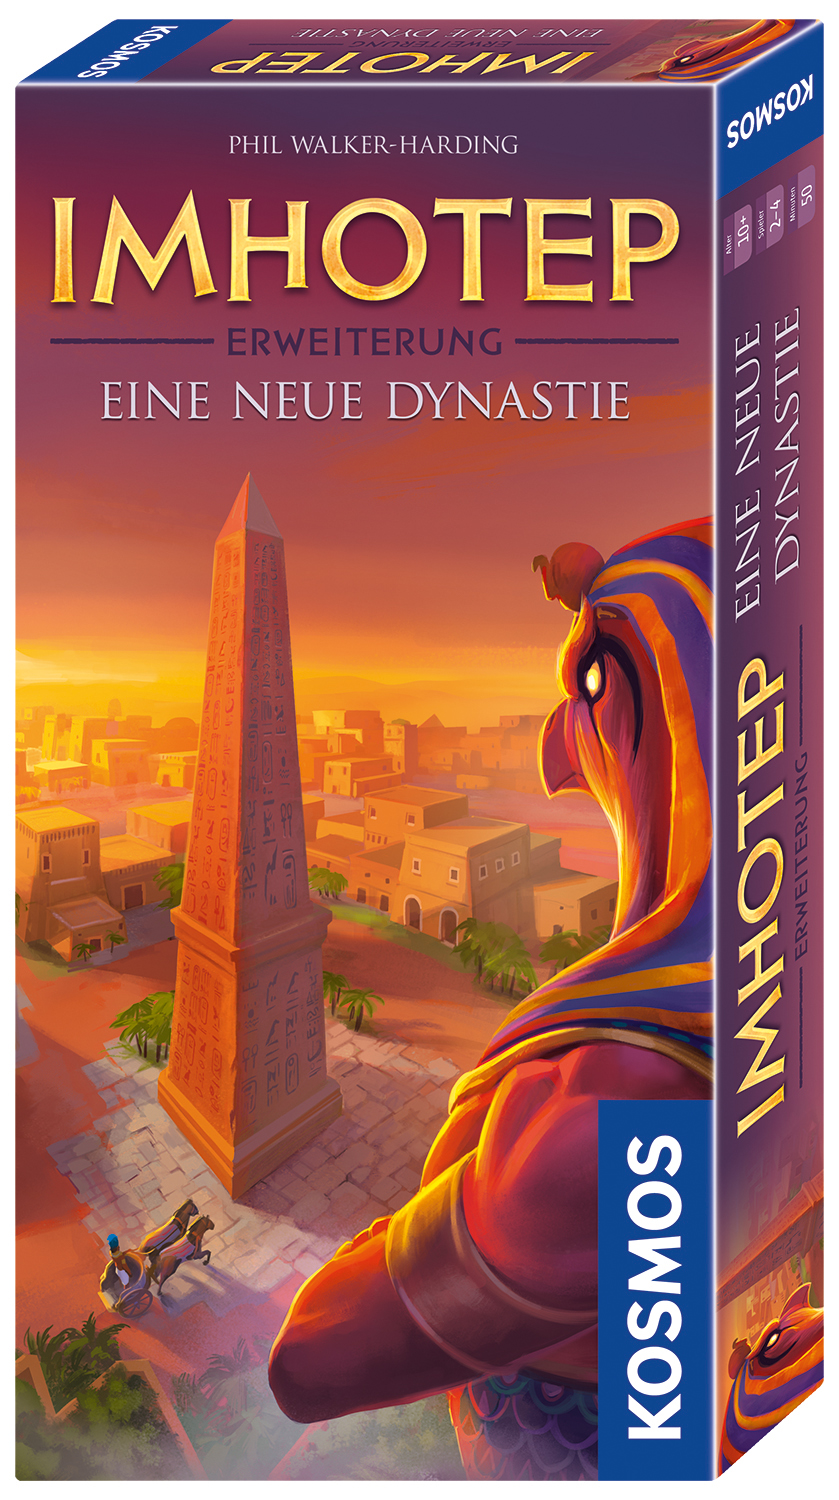 Imhotep Erweiterung Eine neue Dynastie erscheint im Okt. 2017